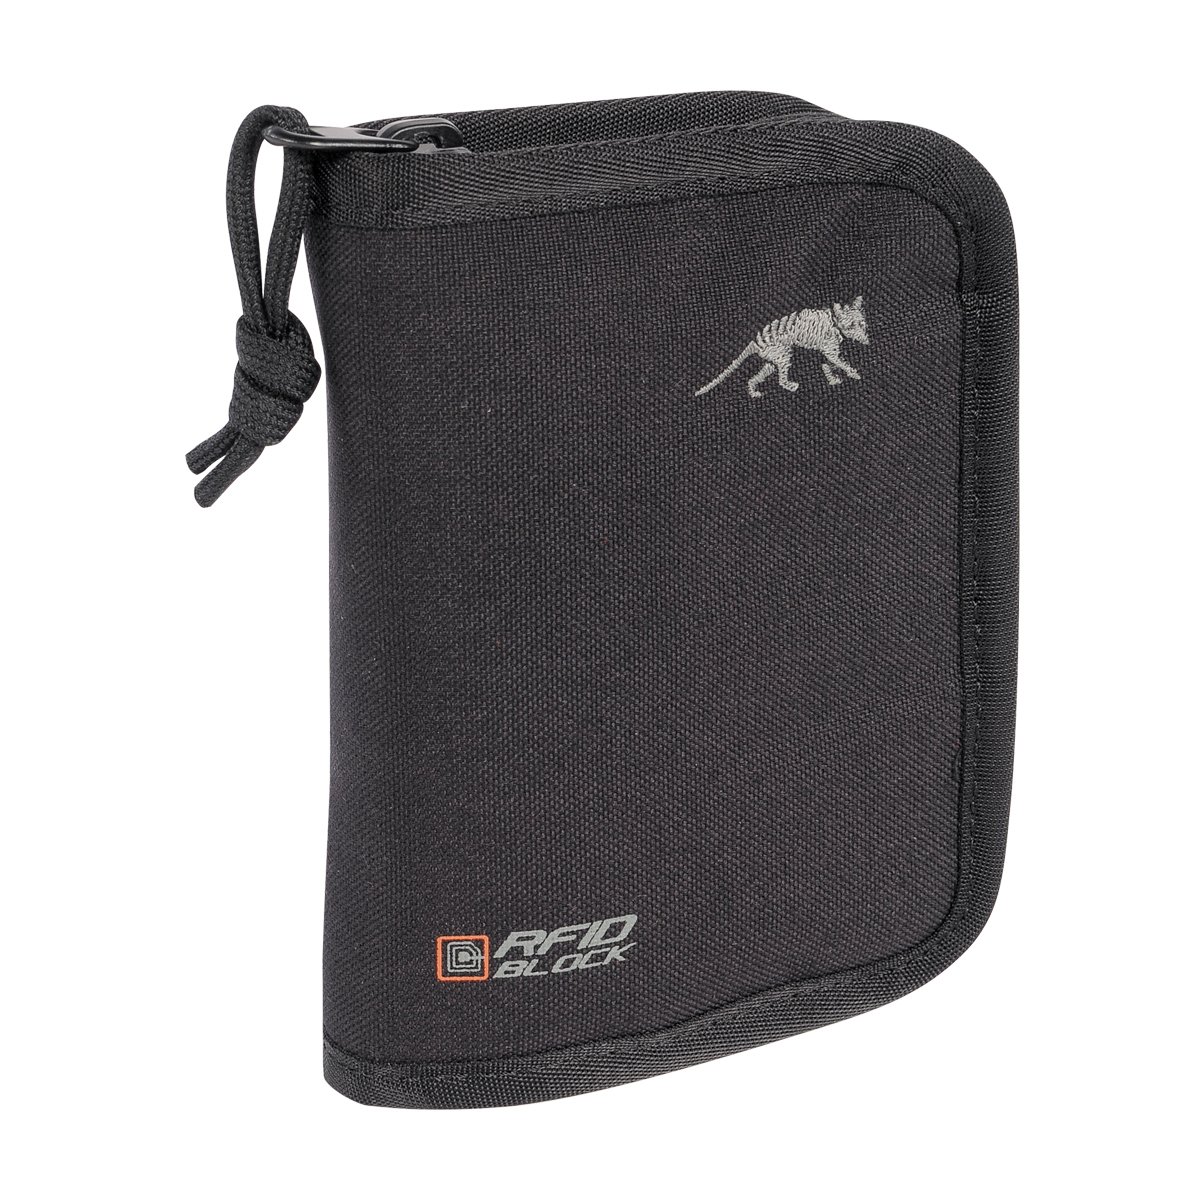 Produktbild von Tasmanian Tiger TT Wallet RFID B, schwarz - Geldbörse mit RFID-Ausleseschutz